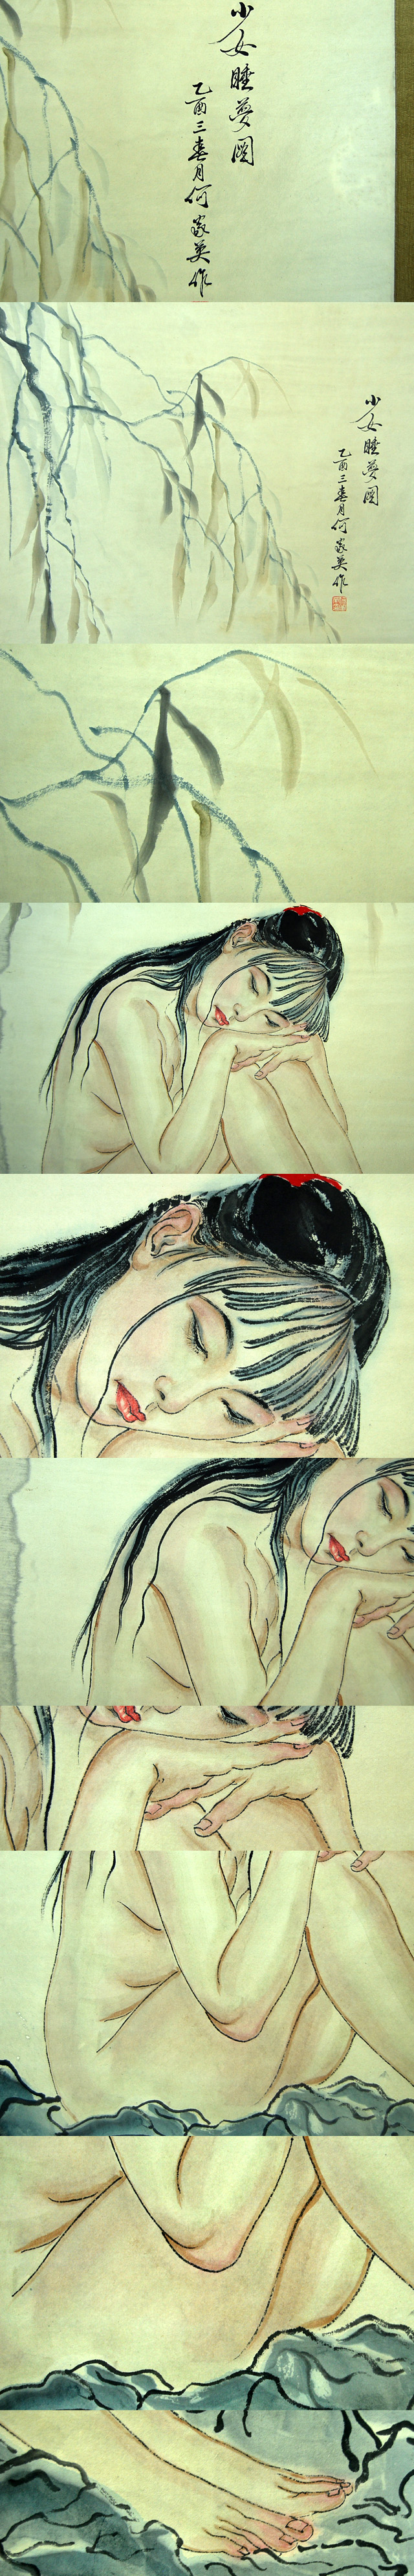 数量限定低価L20677 中国 家英 作 「少女睡夢図」 美人画 裸婦 人物 掛軸 紙本 彩色肉筆 大判 中国美術画 掛軸